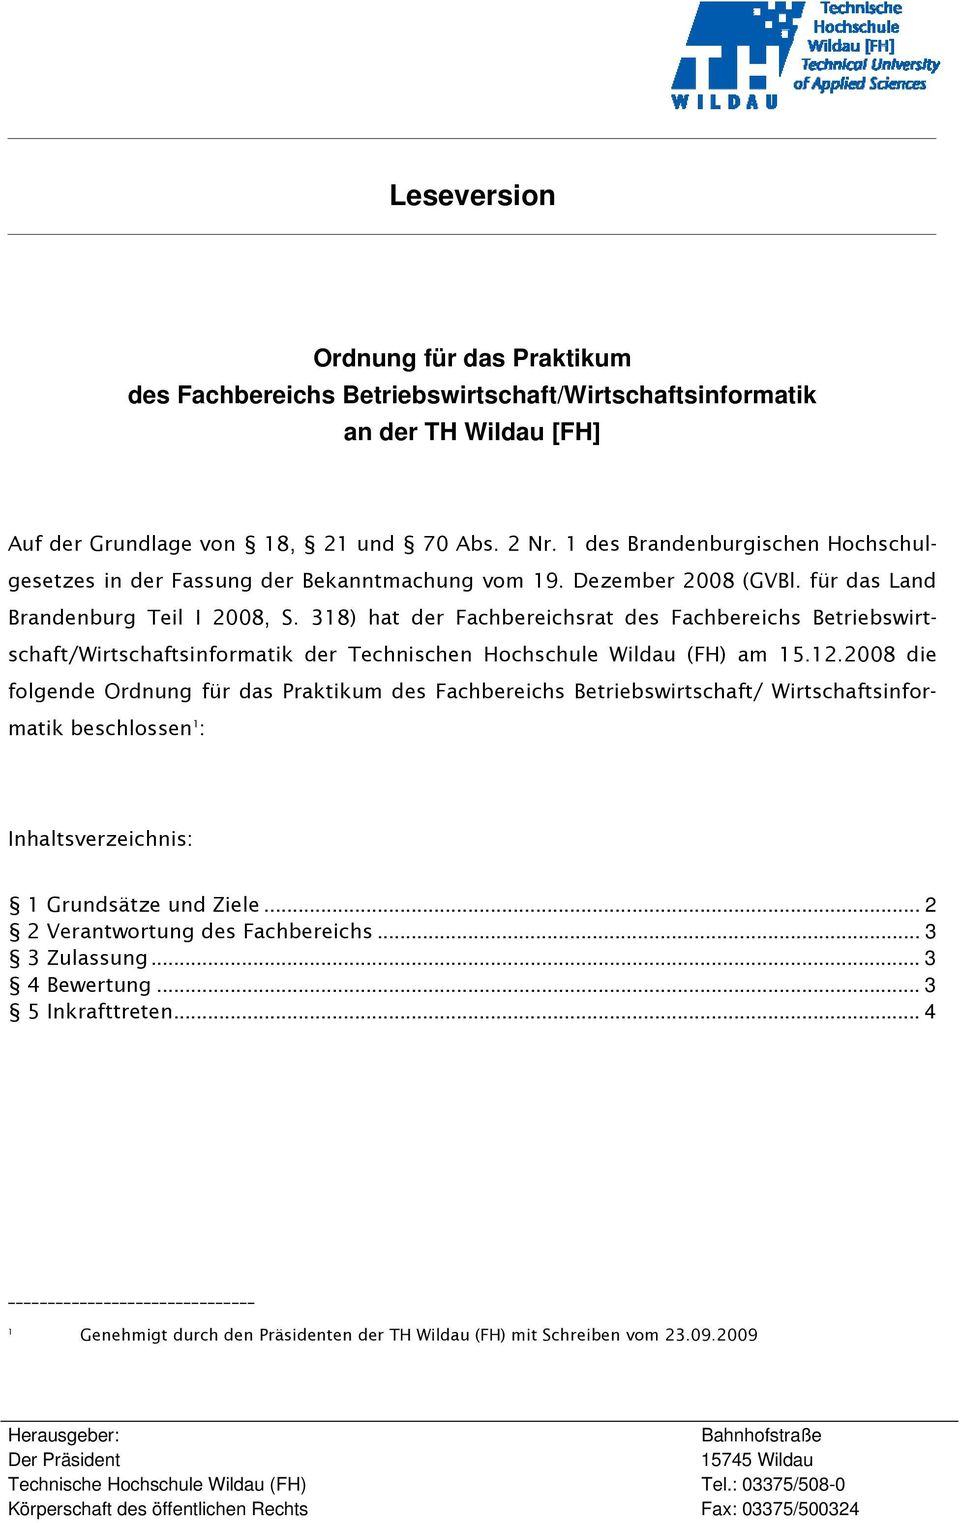 318) hat der Fachbereichsrat des Fachbereichs Betriebswirtschaft/Wirtschaftsinformatik der Technischen Hochschule Wildau (FH) am 15.12.